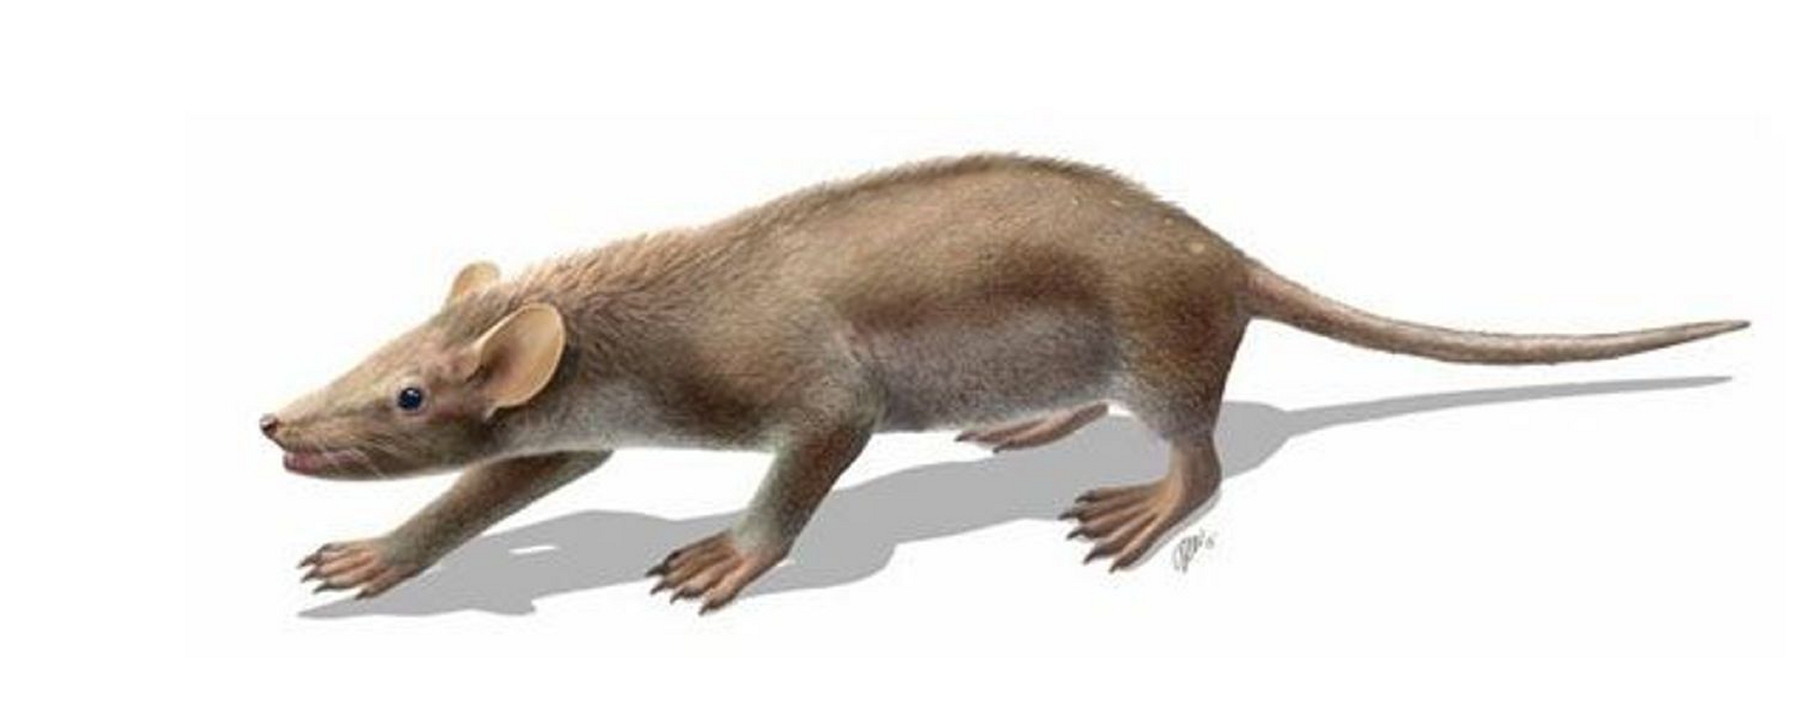 Sur son dos, Spinolestes xenarthrosus cachait des épines au milieu de son pelage. Ce petit mammifère de 25 cm de long, qui pesait moins de 100 grammes, vivait au Crétacé inférieur, avant l'impact de l'astéroïde qui a creusé le cratère de Chicxulub. L'espèce a disparu, comme beaucoup d'autres, dont les dinosaures non&nbsp;aviens. © O. Sanisidro